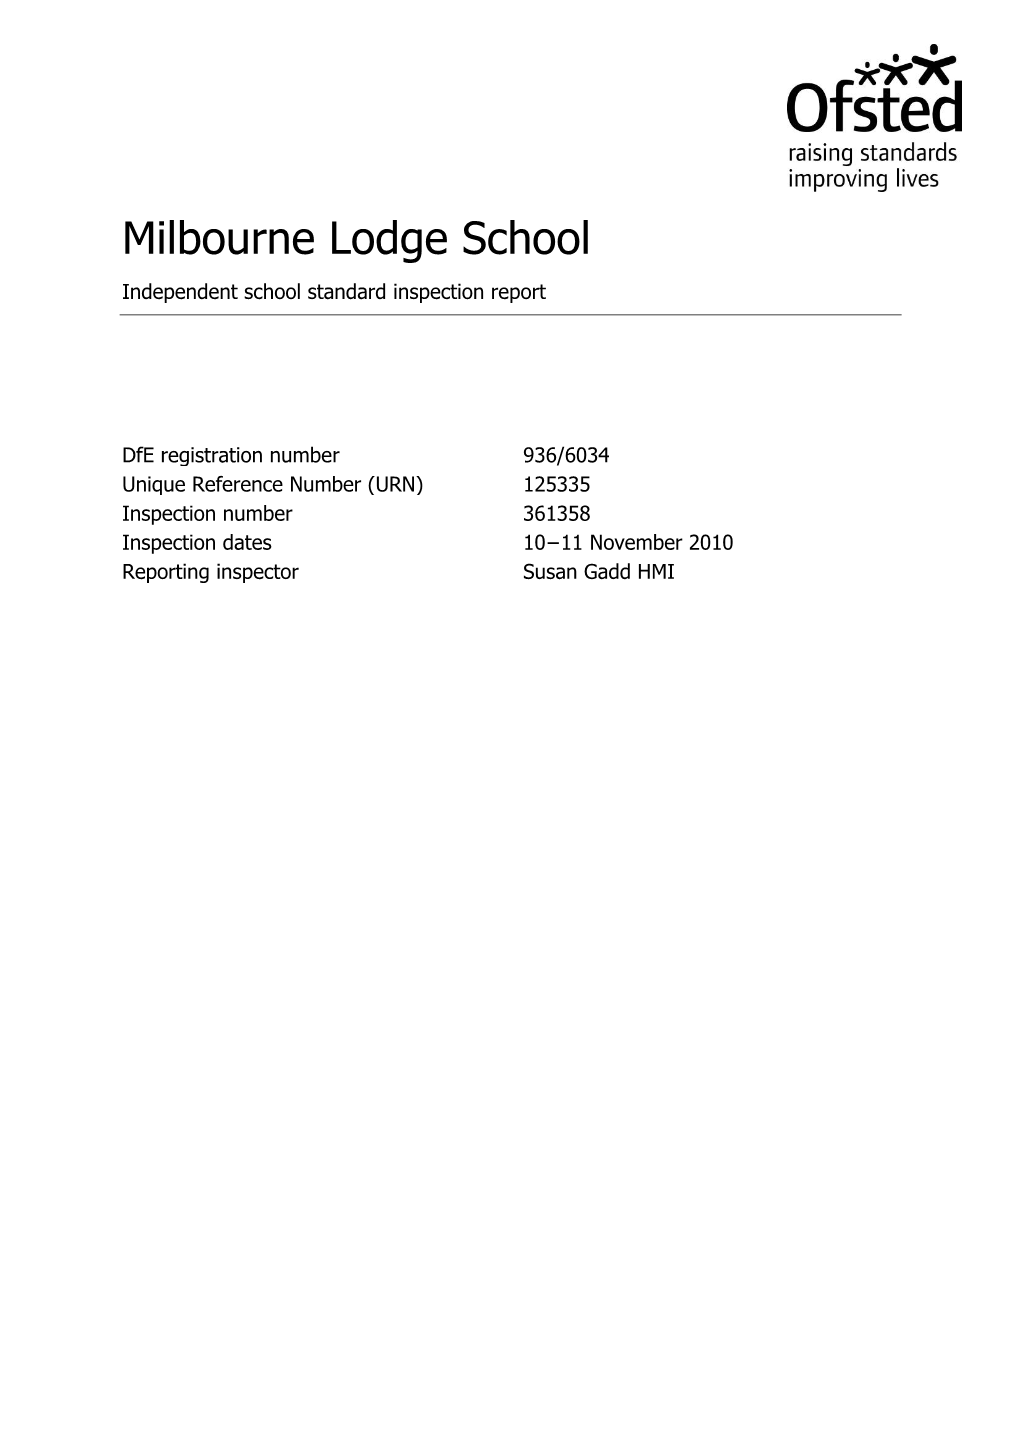 Milbourne Lodge School Independent School Standard Inspection Report